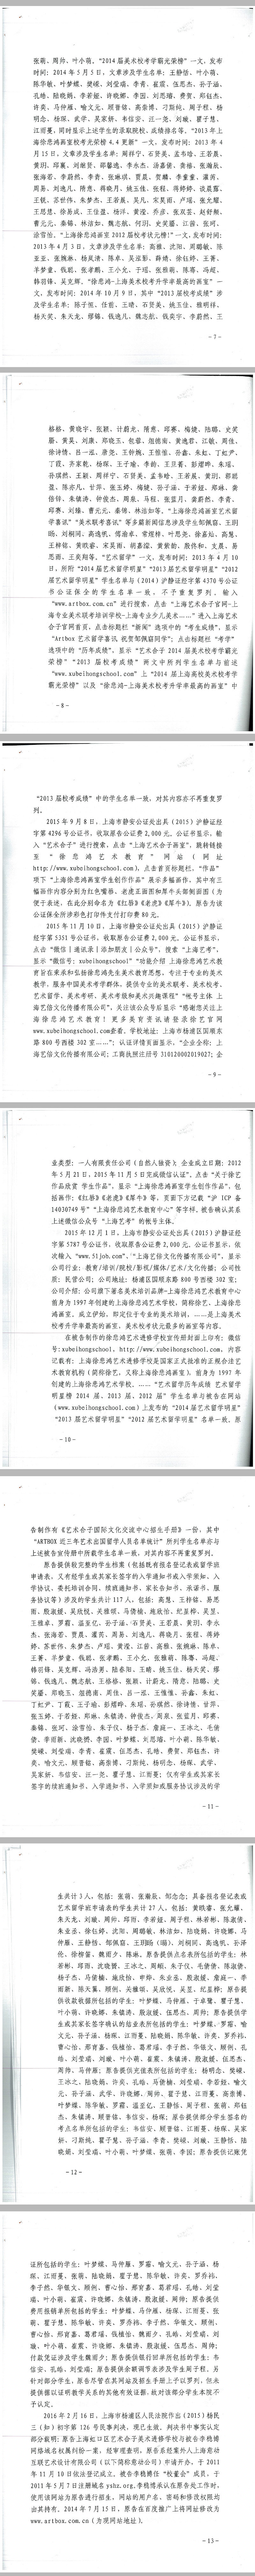 上海徐悲鸿画室盗用上海艺术合子学员成绩作品录取信息虚假宣传侵权案